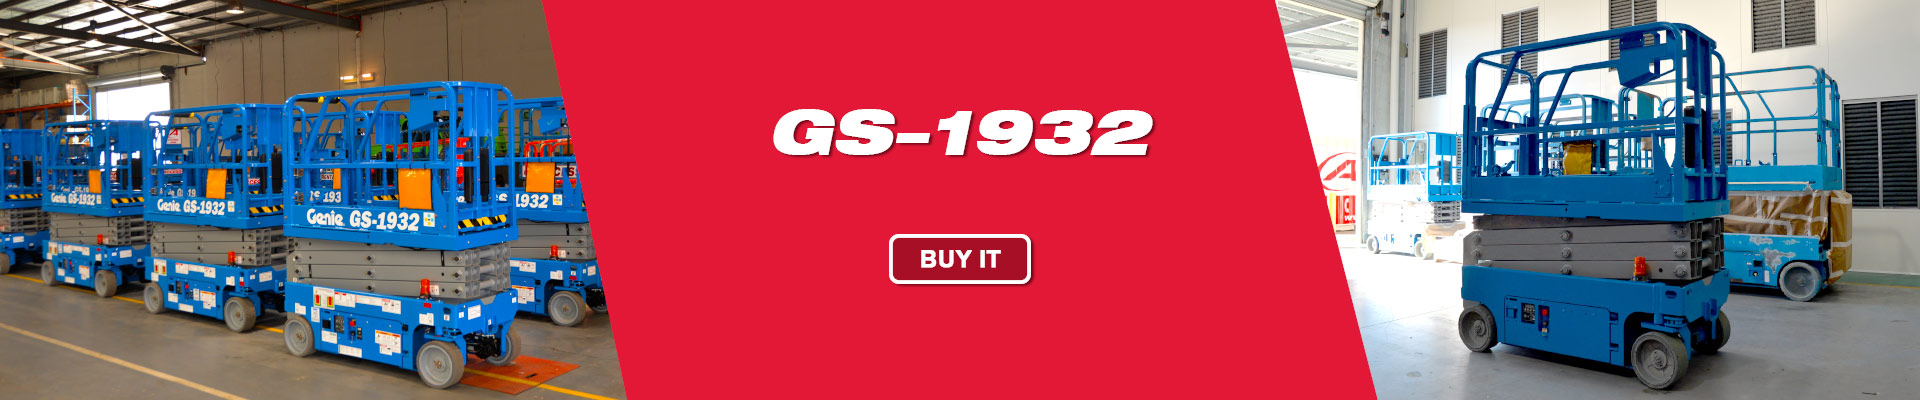 Genie-GS-1932-for-sale